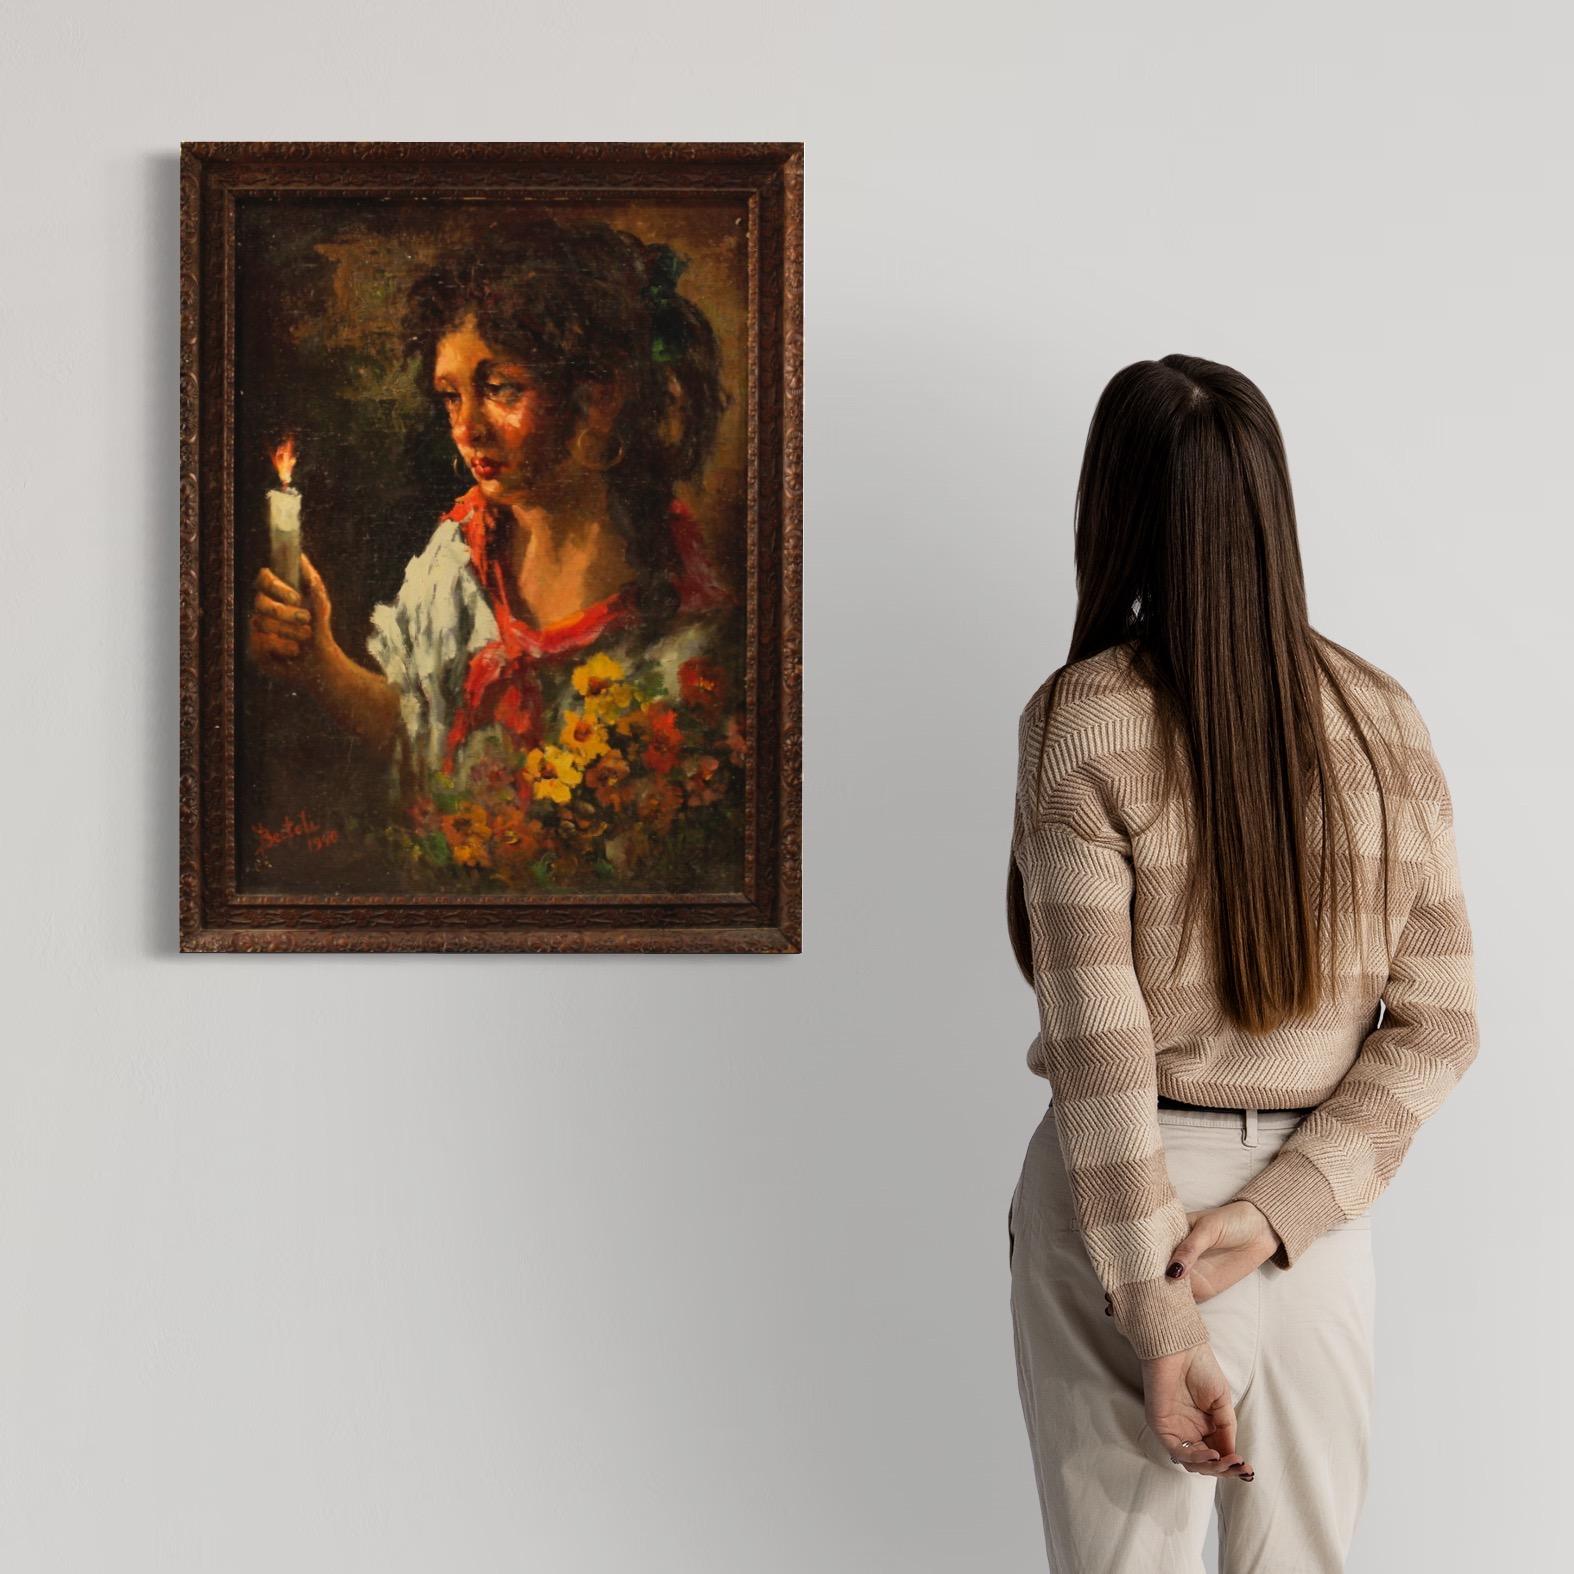 La peinture italienne du milieu du XXe siècle. Travail à l'huile sur masonite représentant une jeune gitane avec des fleurs et une bougie, d'une bonne main picturale. Photo de belle mesure, signée et datée en bas à gauche (voir photo). Cadre en bois